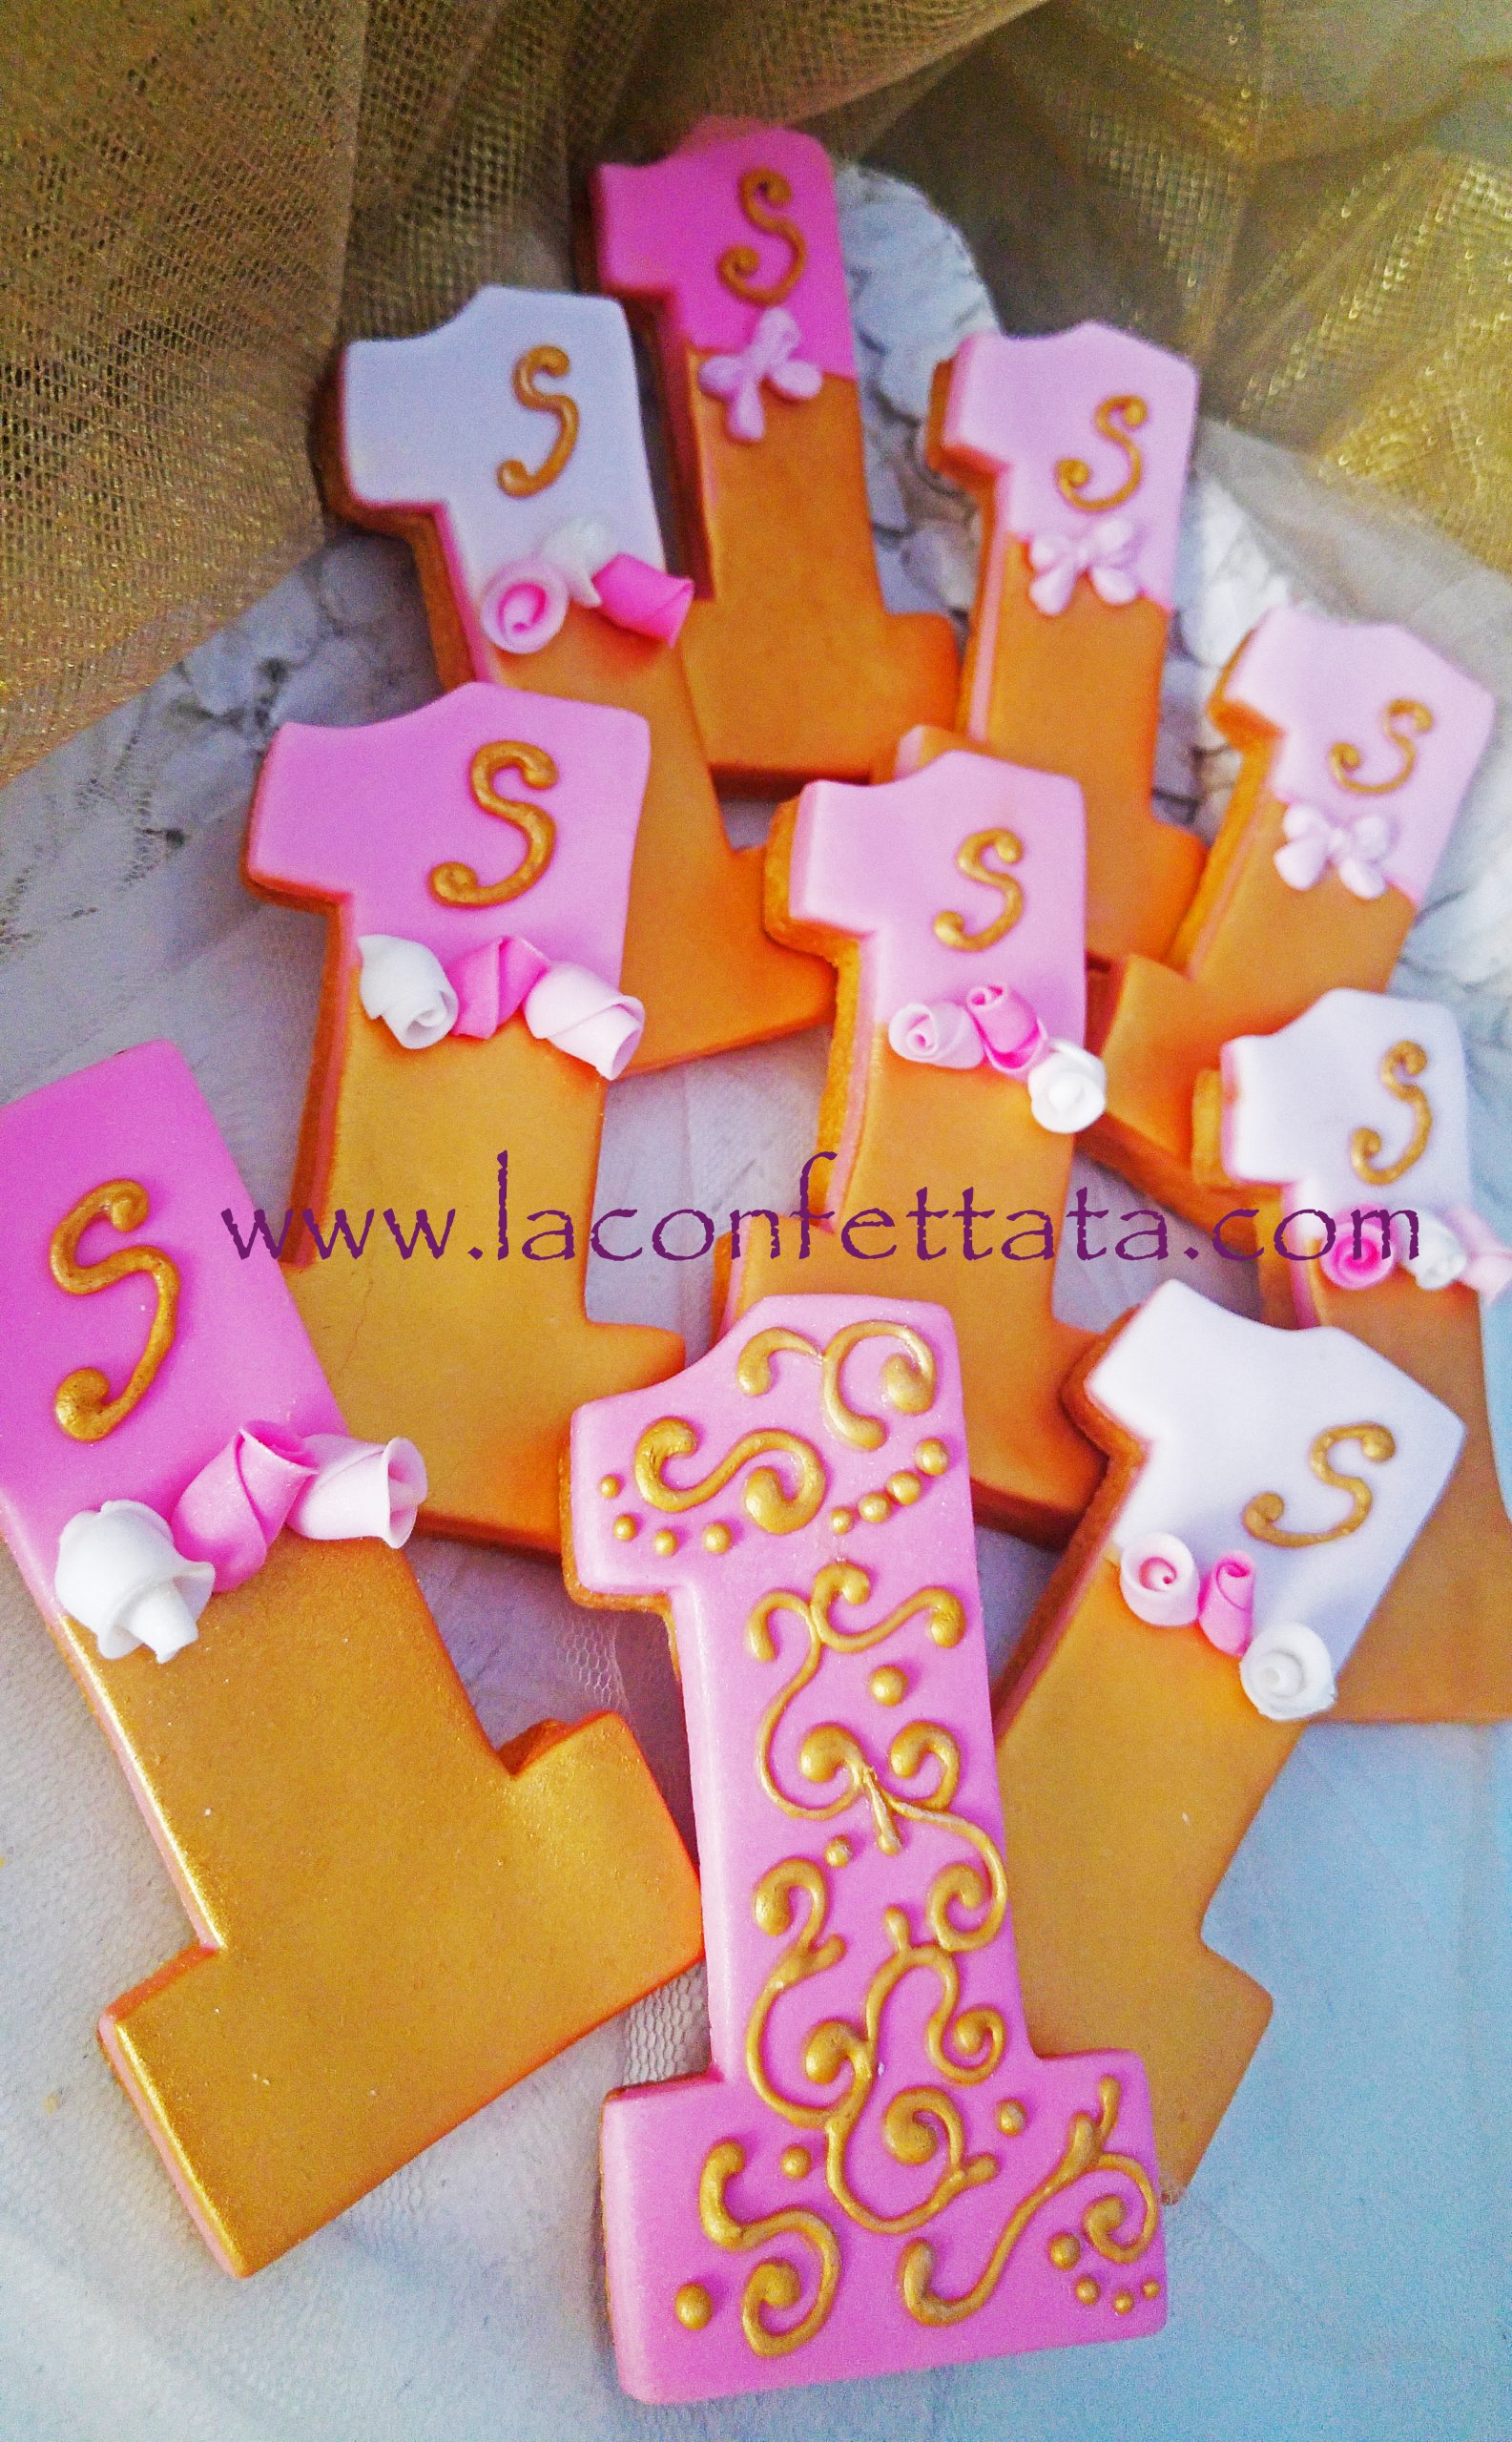 biscotti decorati bimba, biscotti segnaposto compleanno